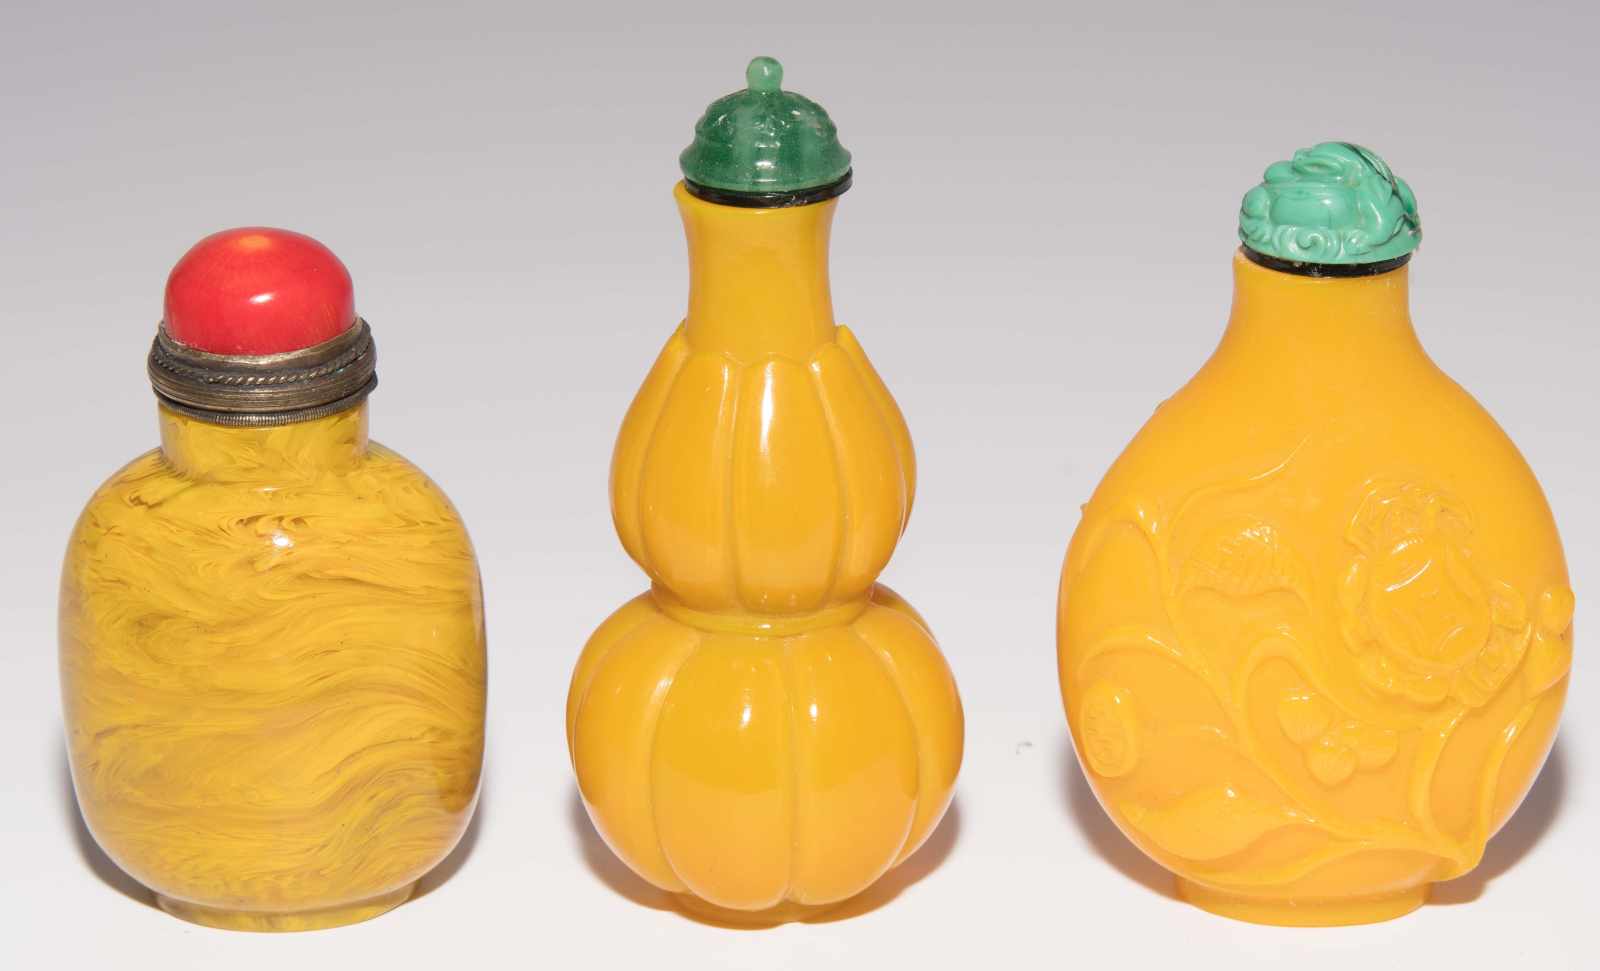 7 Glas Snuff BottlesChina. Halbtransparentes bis opakes Glas in verschiedenen Gelbtönen. H 5–8 cm. - Image 2 of 21